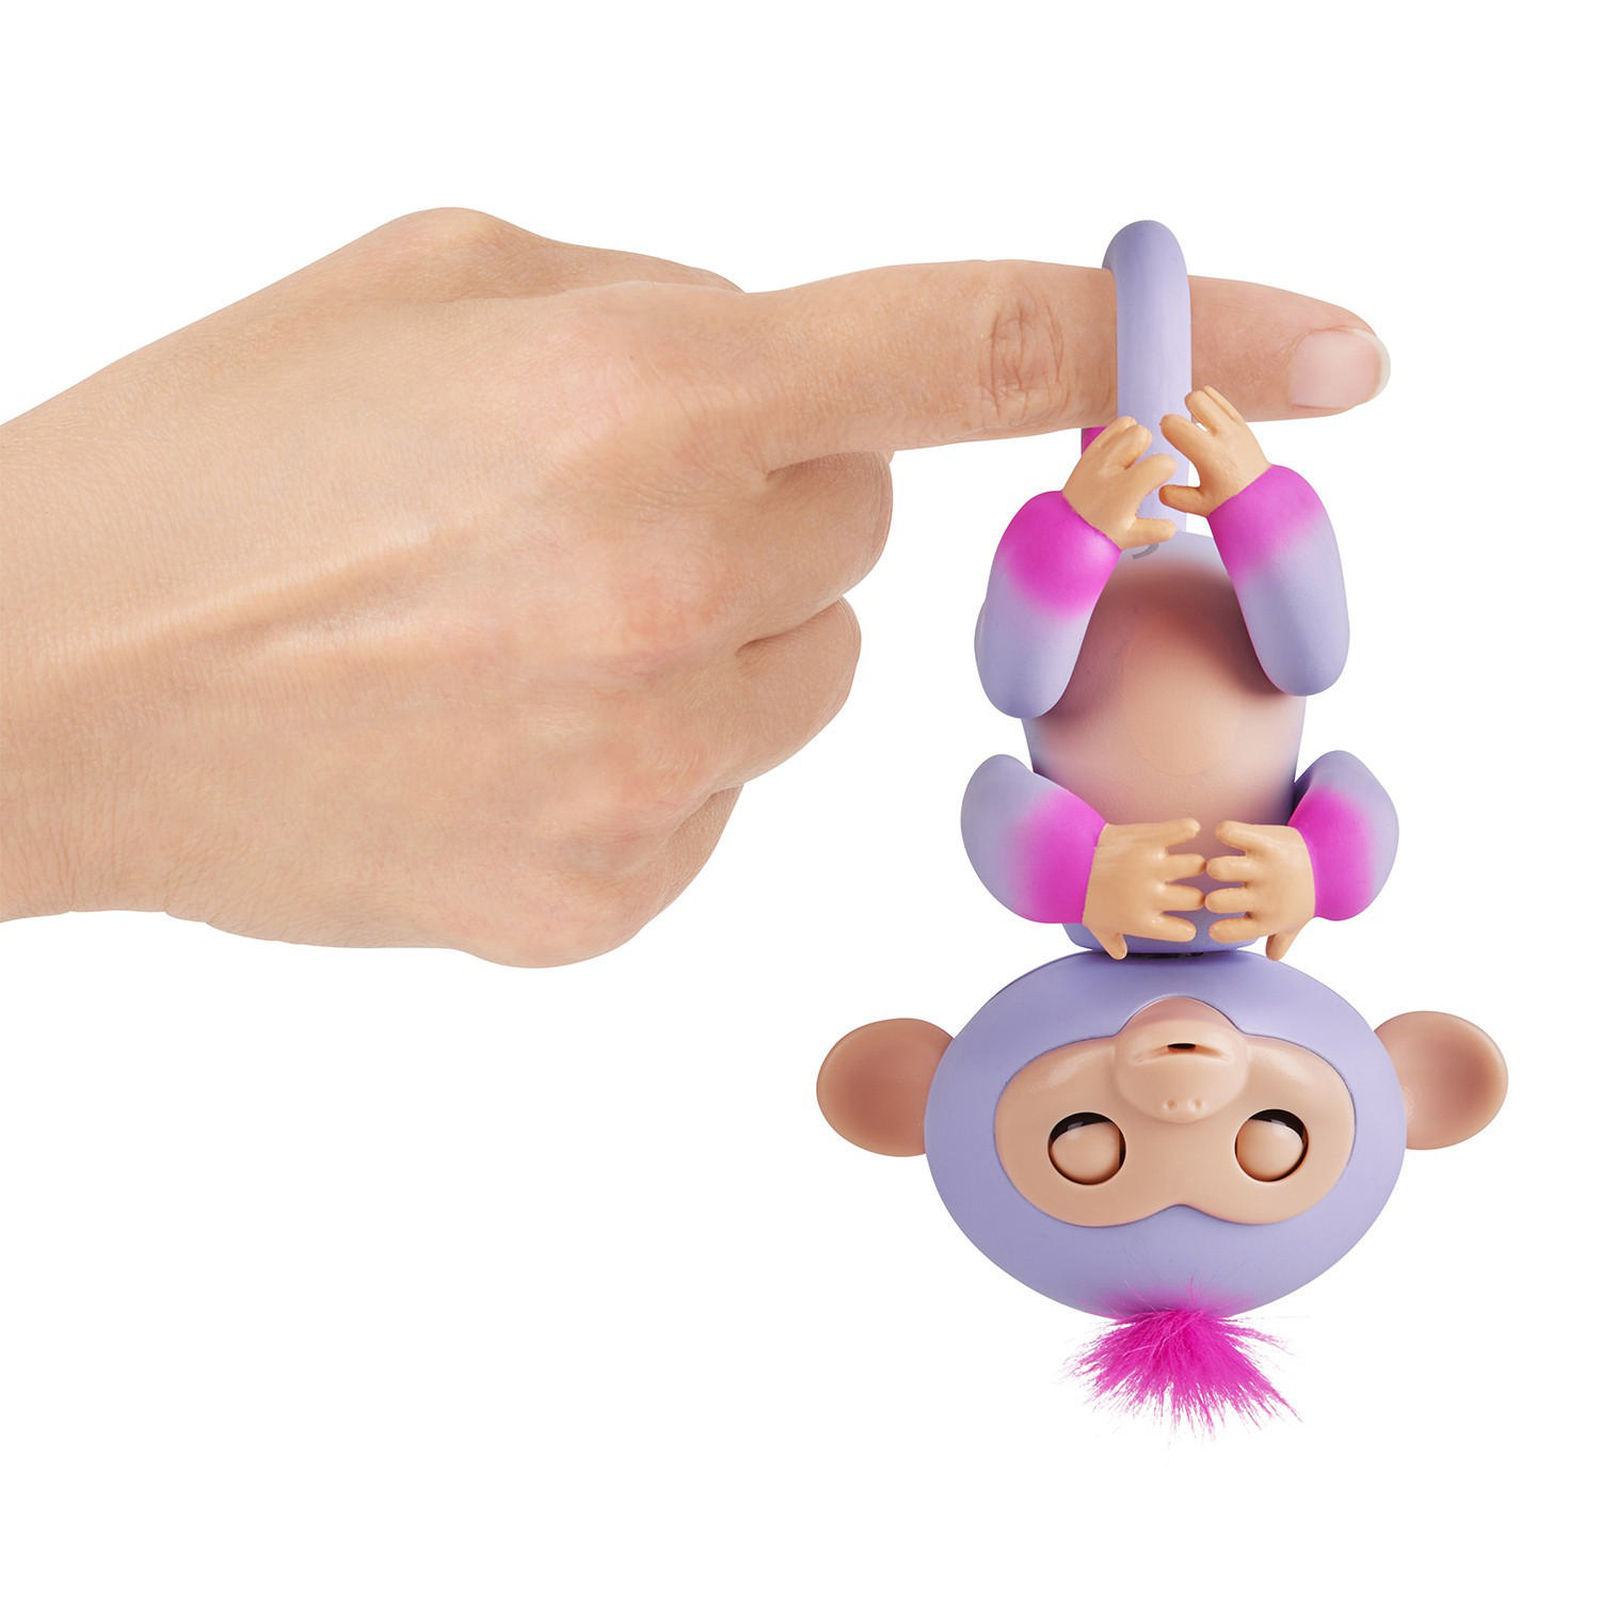 Интерактивная обезьянка Сидней, цвет - пурпур и розовая, 12 см.  